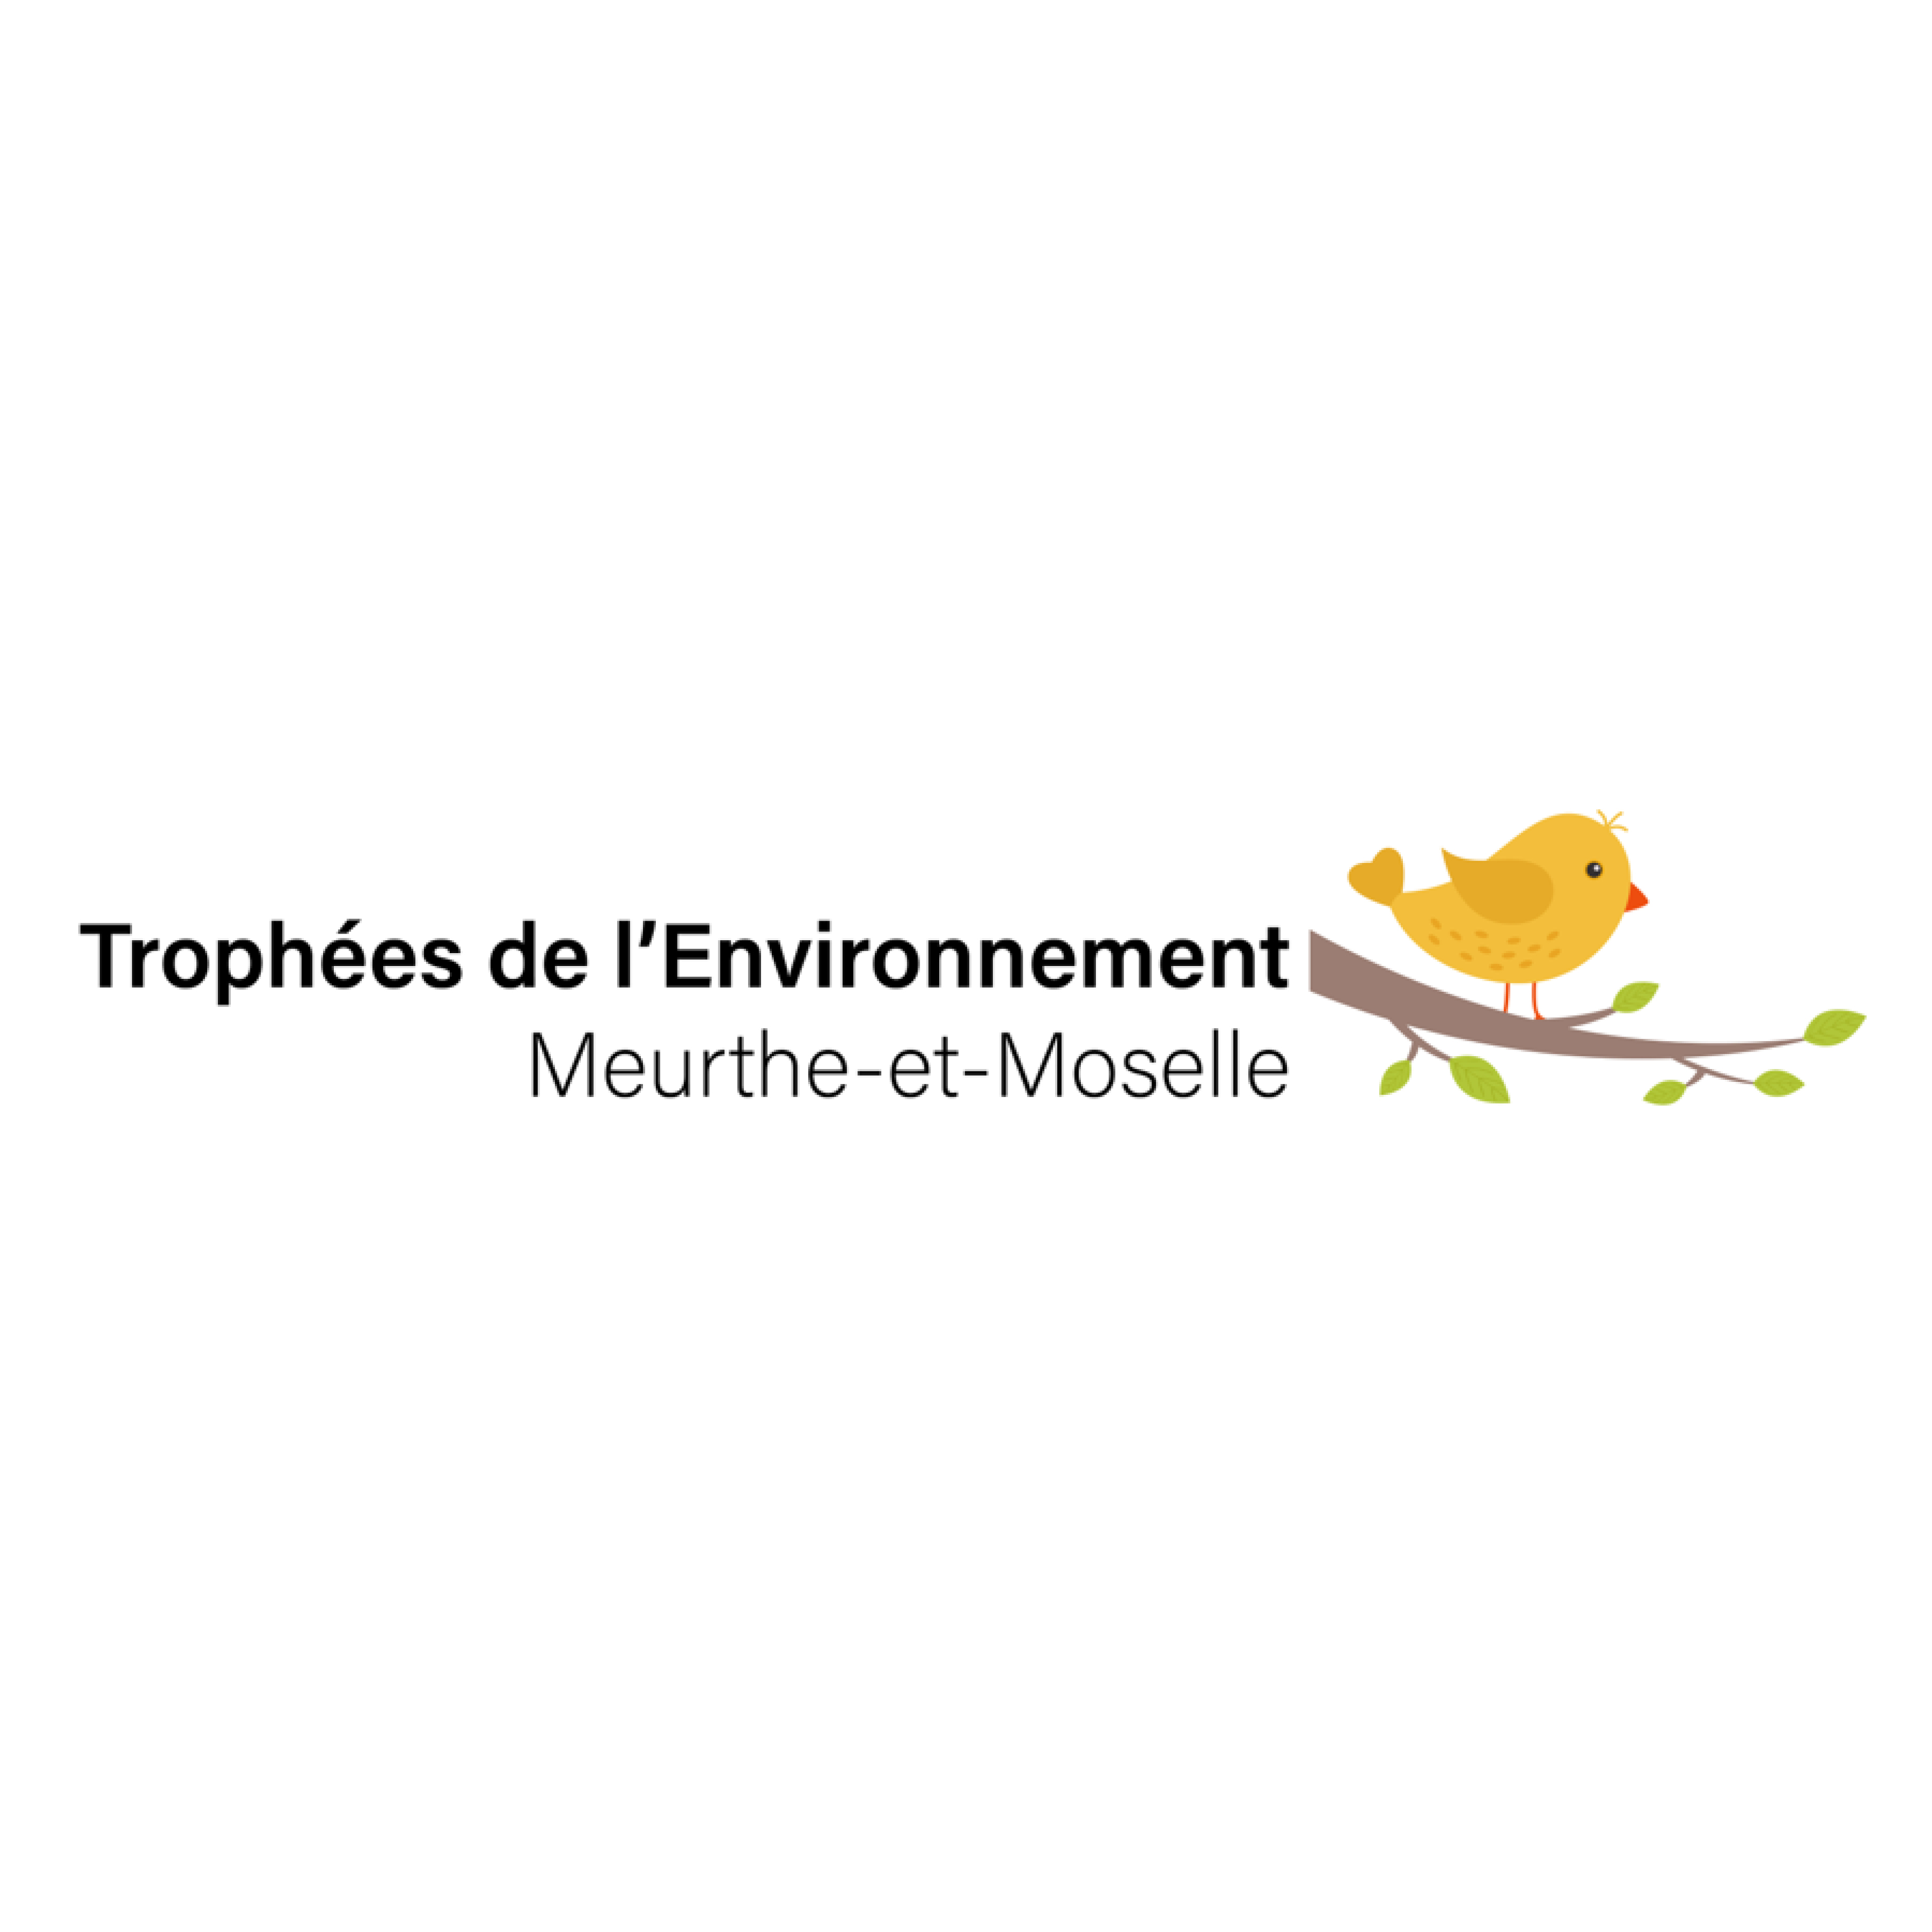 Trophées de l'Environnement Meurthe-et-Moselle